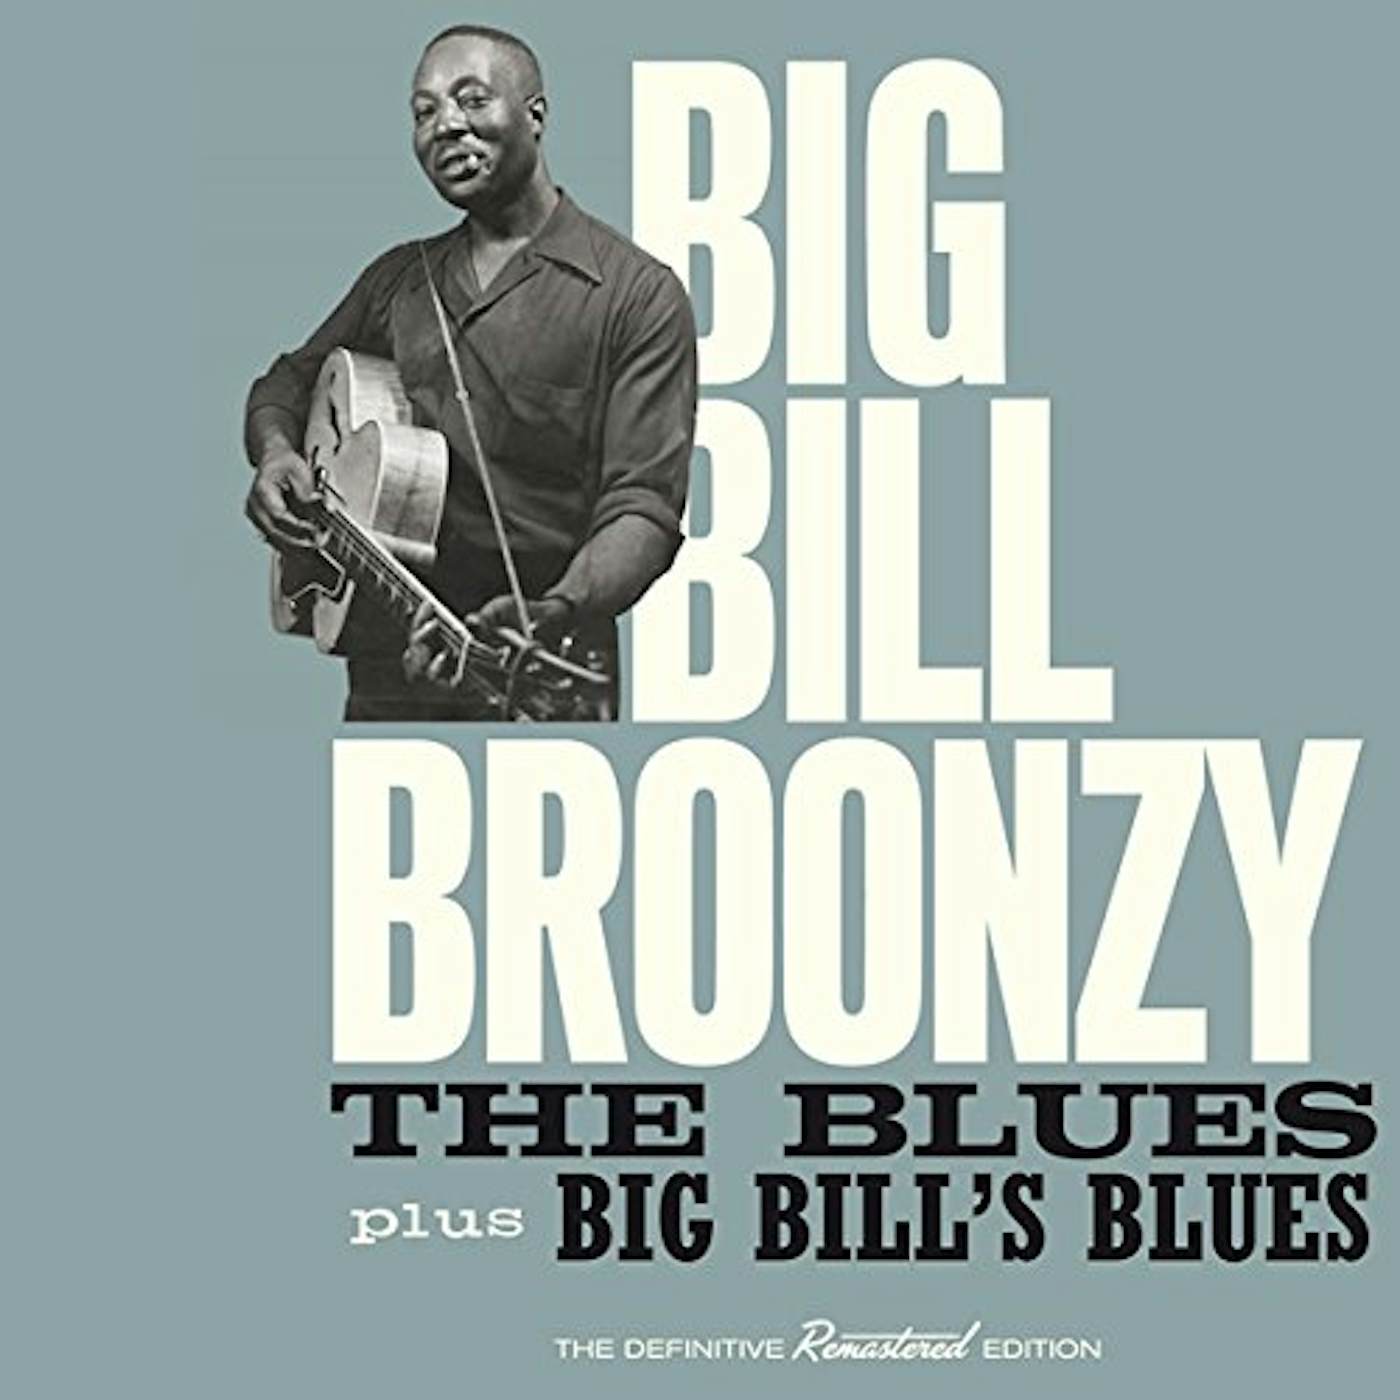 Big Bill Broonzy BLUES + BIG BILL'S BLUES CD